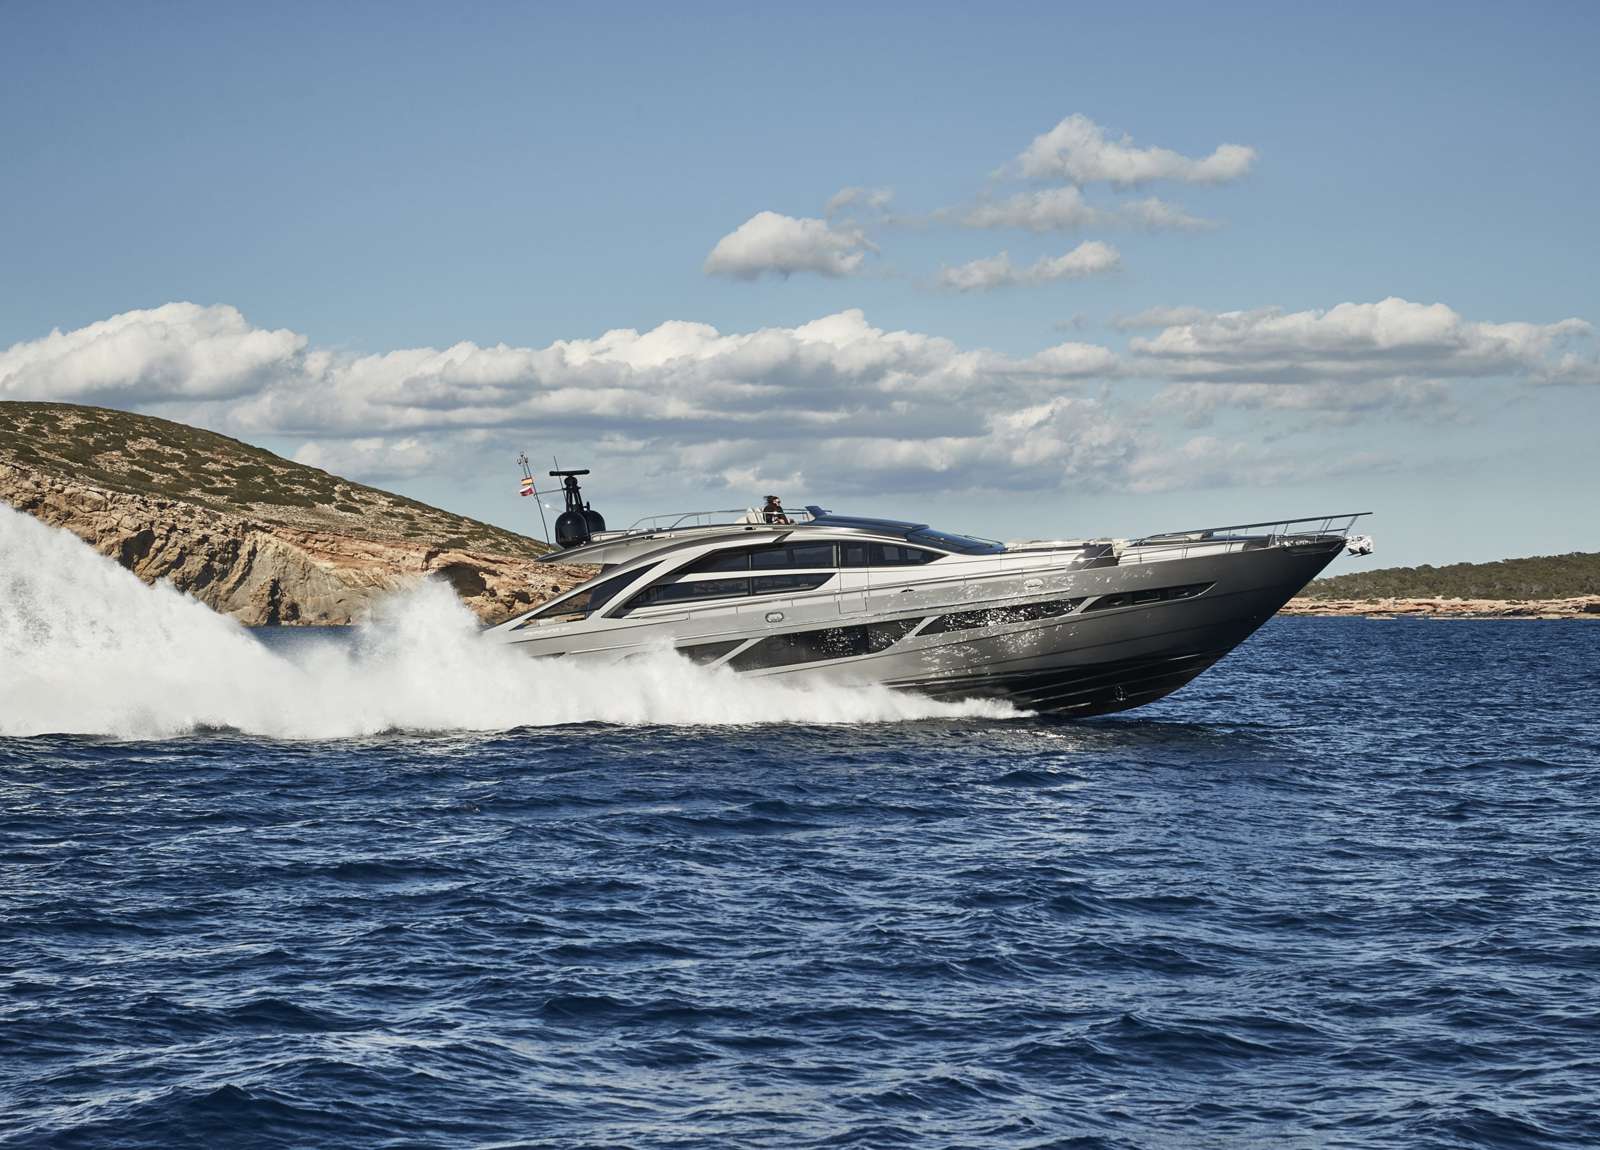 luxury yacht charter pershing 9x baloo iii balearic islands charter